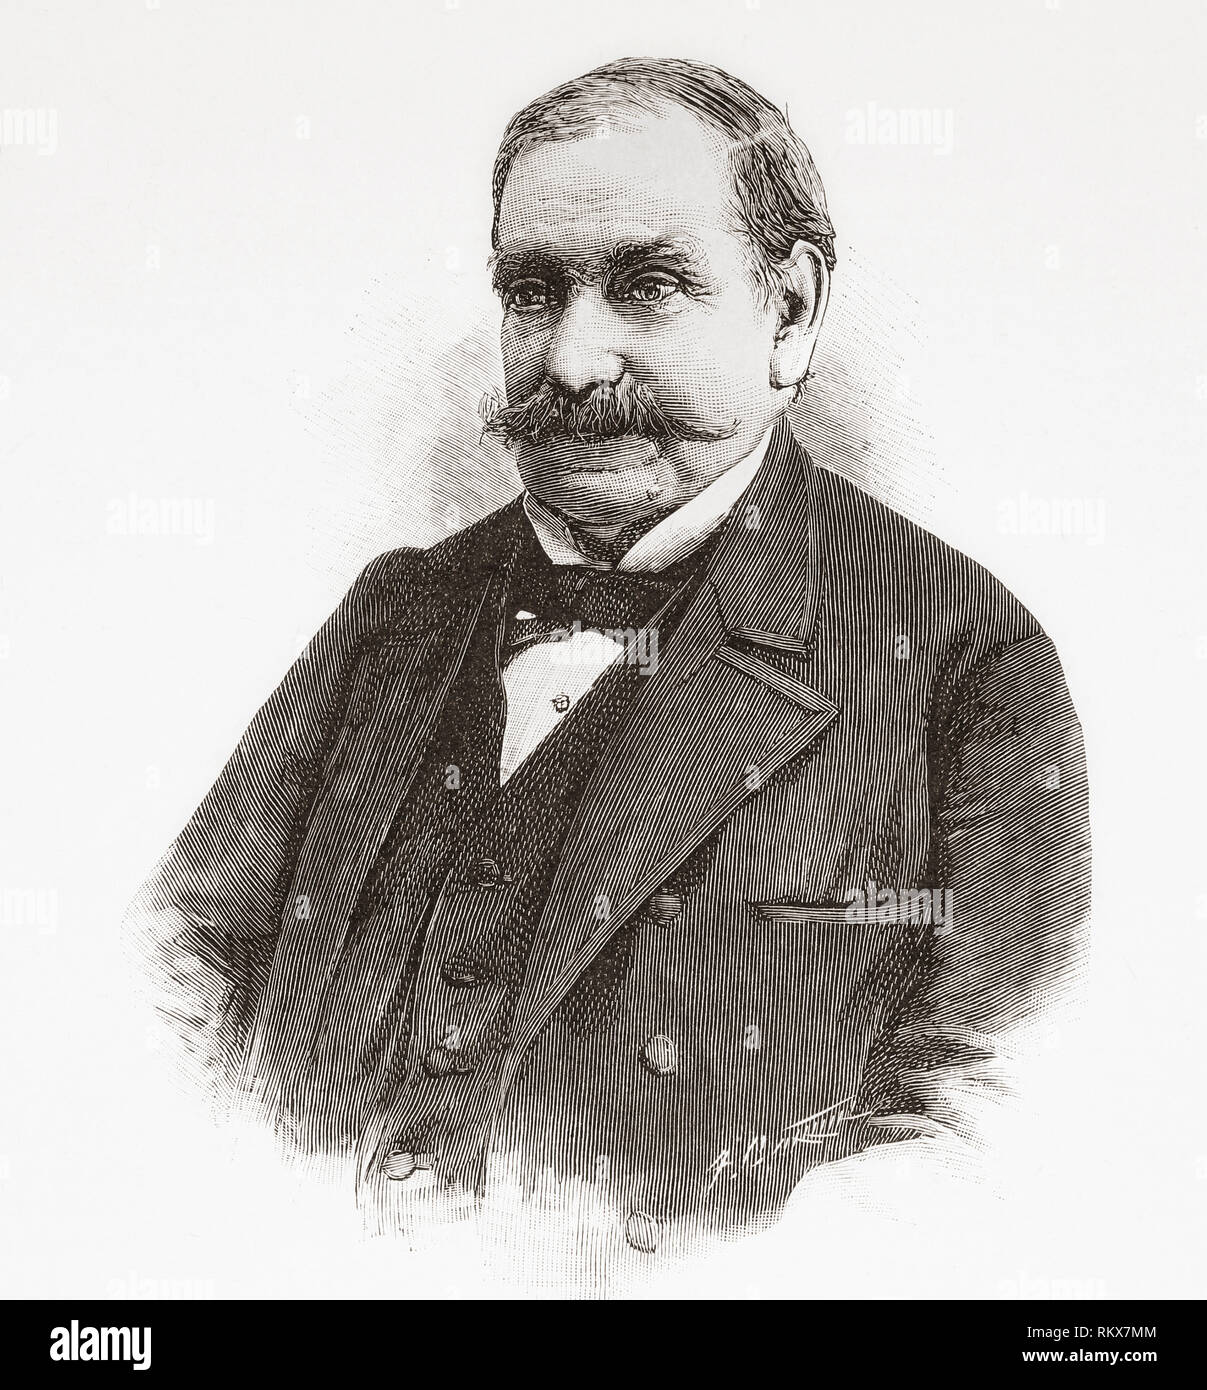 Demetrio de los Rios y Serrano, 1827 - 1892.  Spanish architect and archaeologist. From La Ilustracion Española y Americana, published 1892. Stock Photo